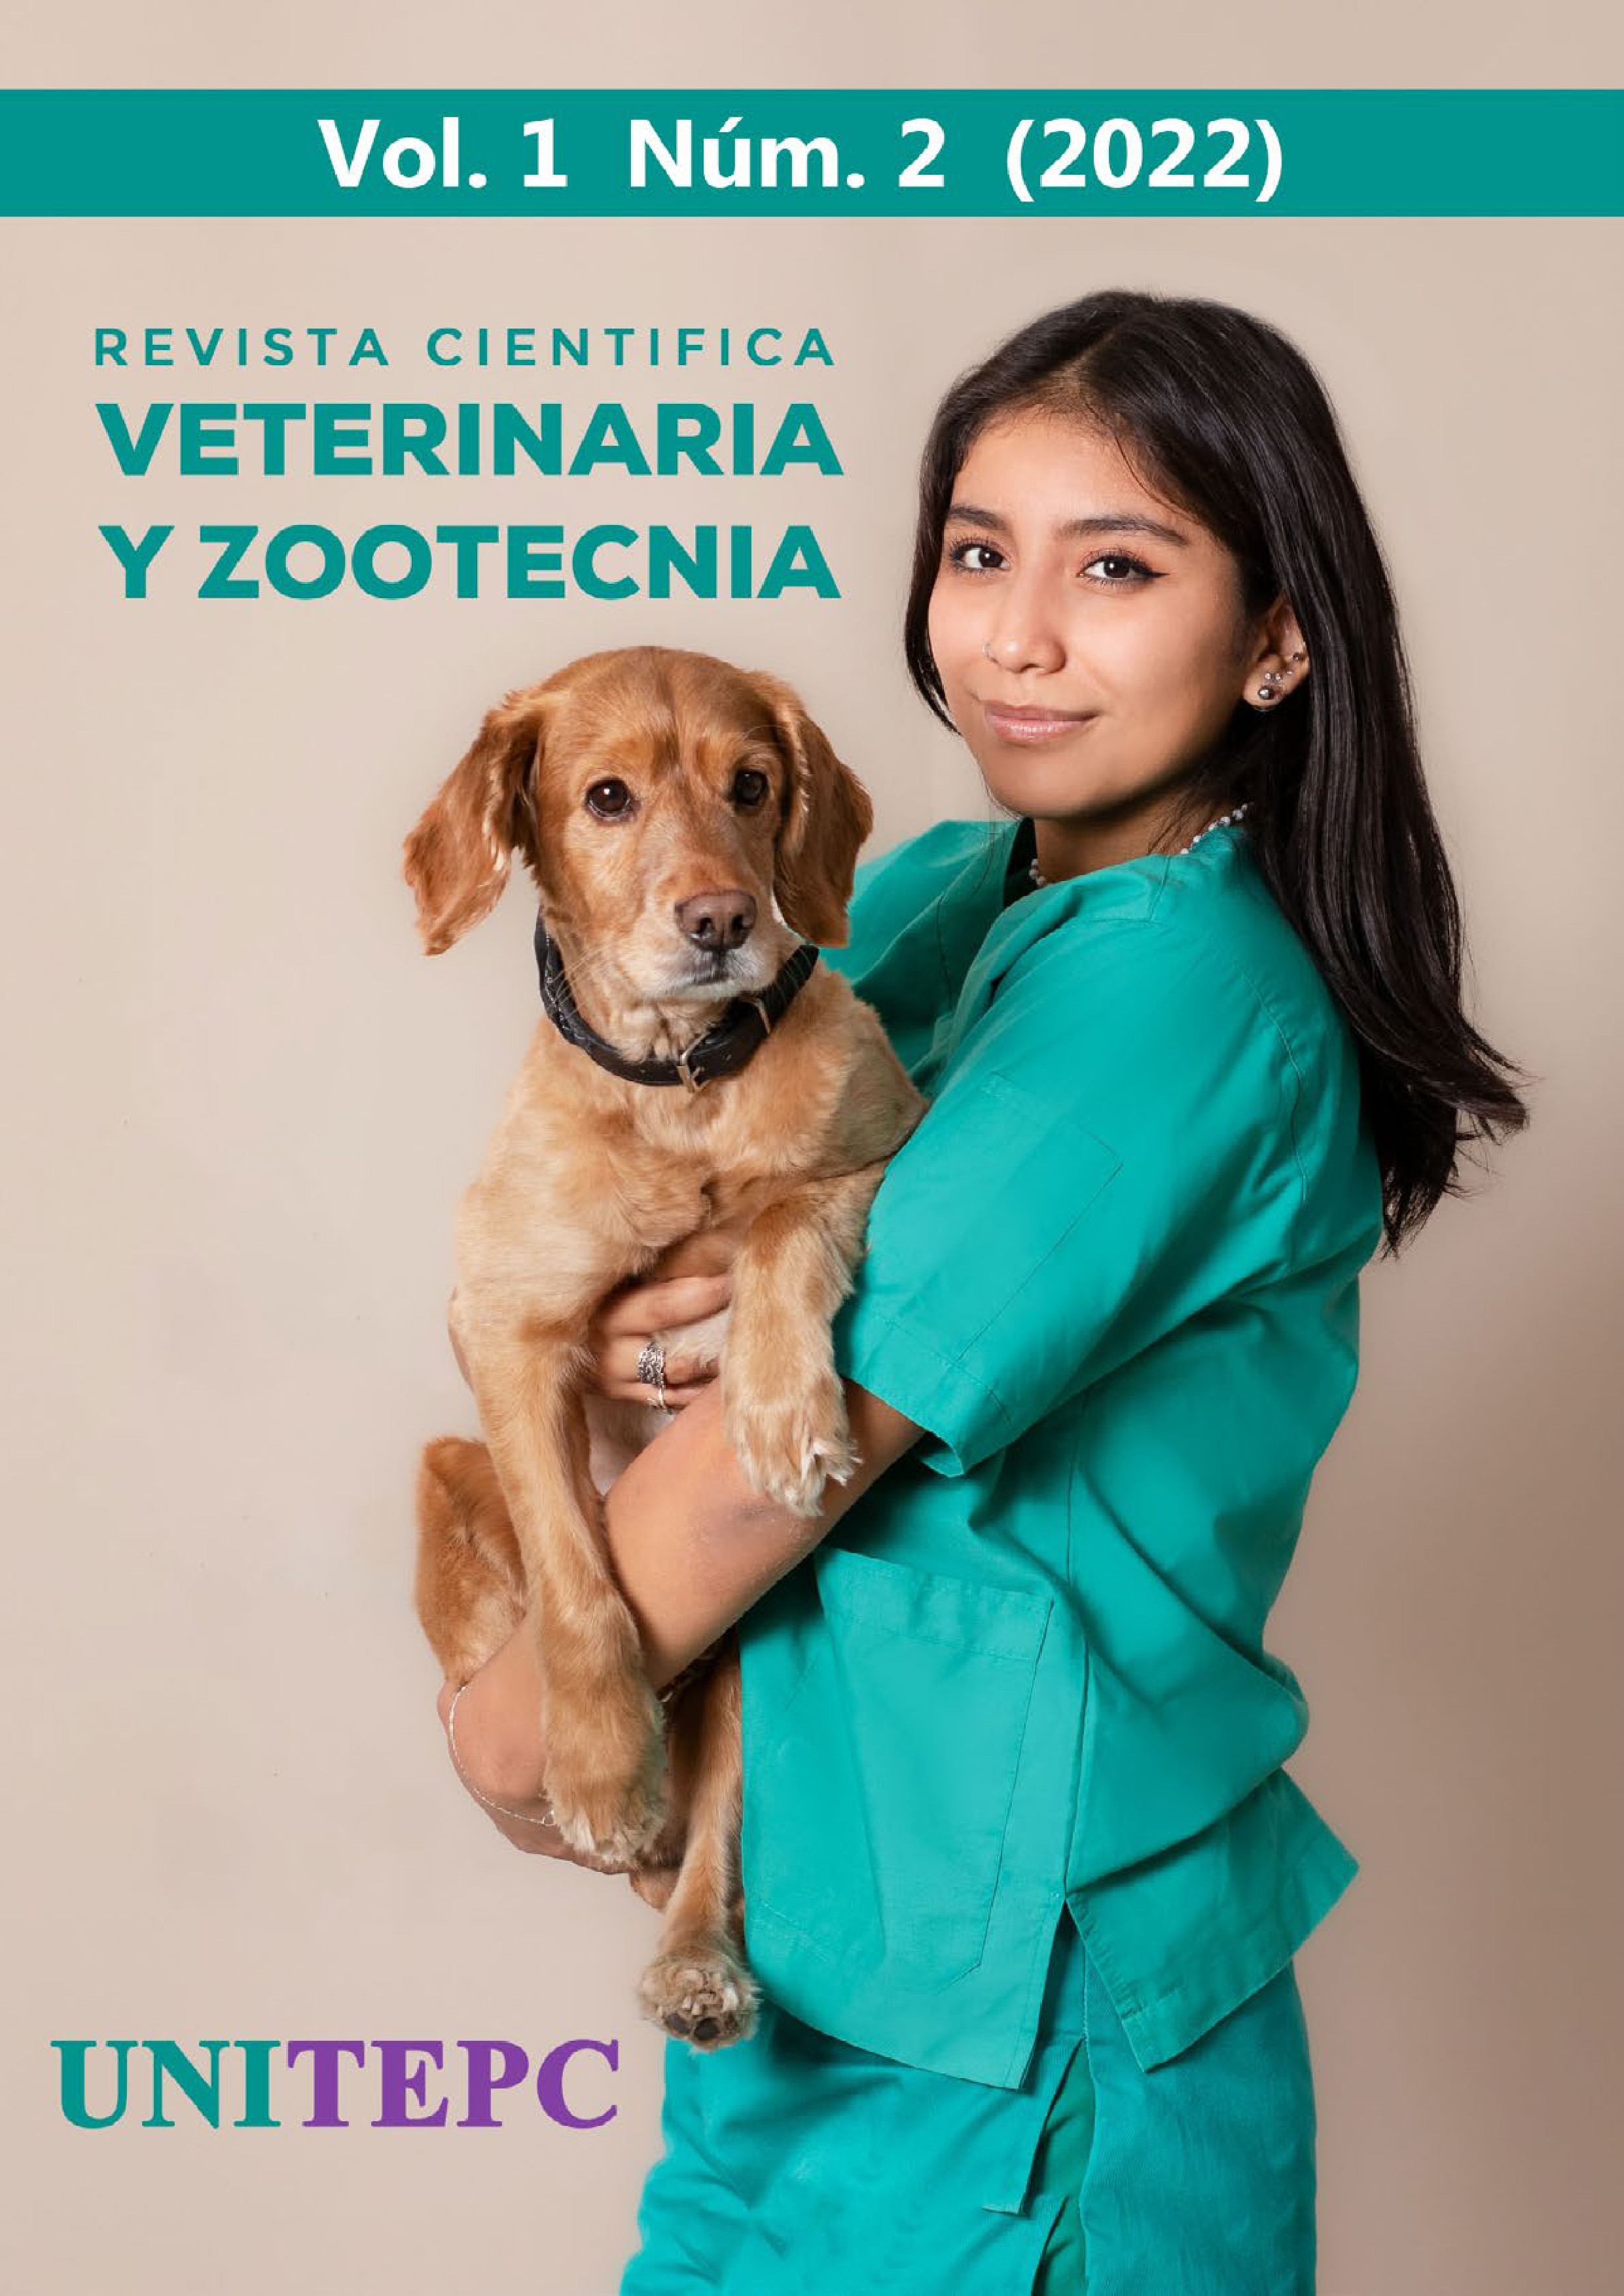 					View Vol. 1 No. 2 (2022): Revista Científica de Veterinaria y Zootecnia UNITEPC
				